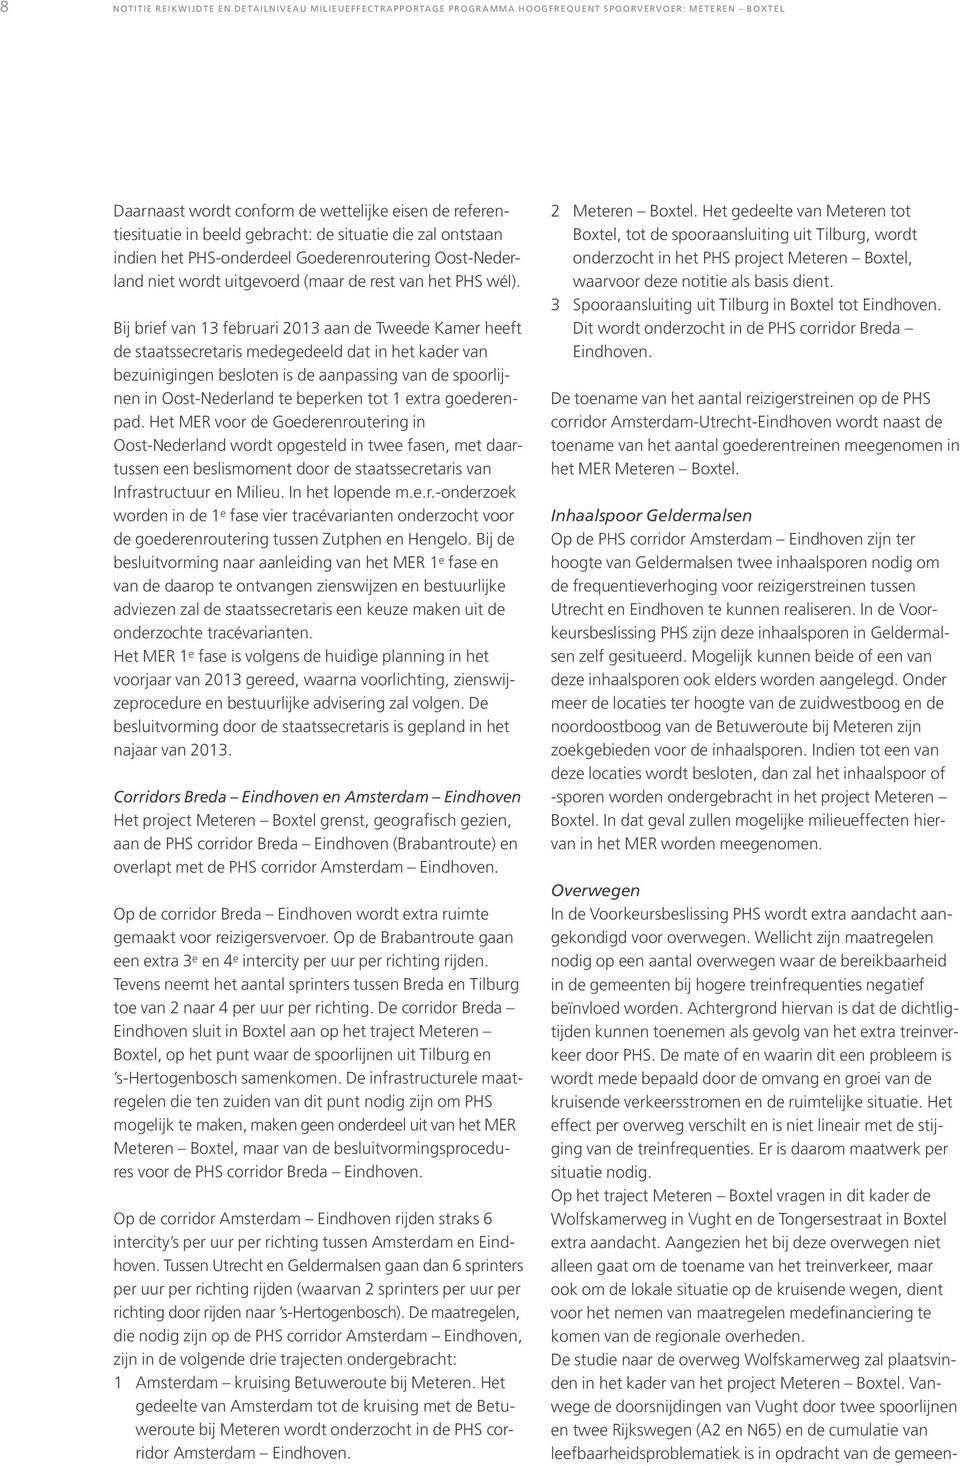 Bij brief van 13 februari 2013 aan de Tweede Kamer heeft de staatssecretaris medegedeeld dat in het kader van bezuinigingen besloten is de aanpassing van de spoorlijnen in Oost-Nederland te beperken